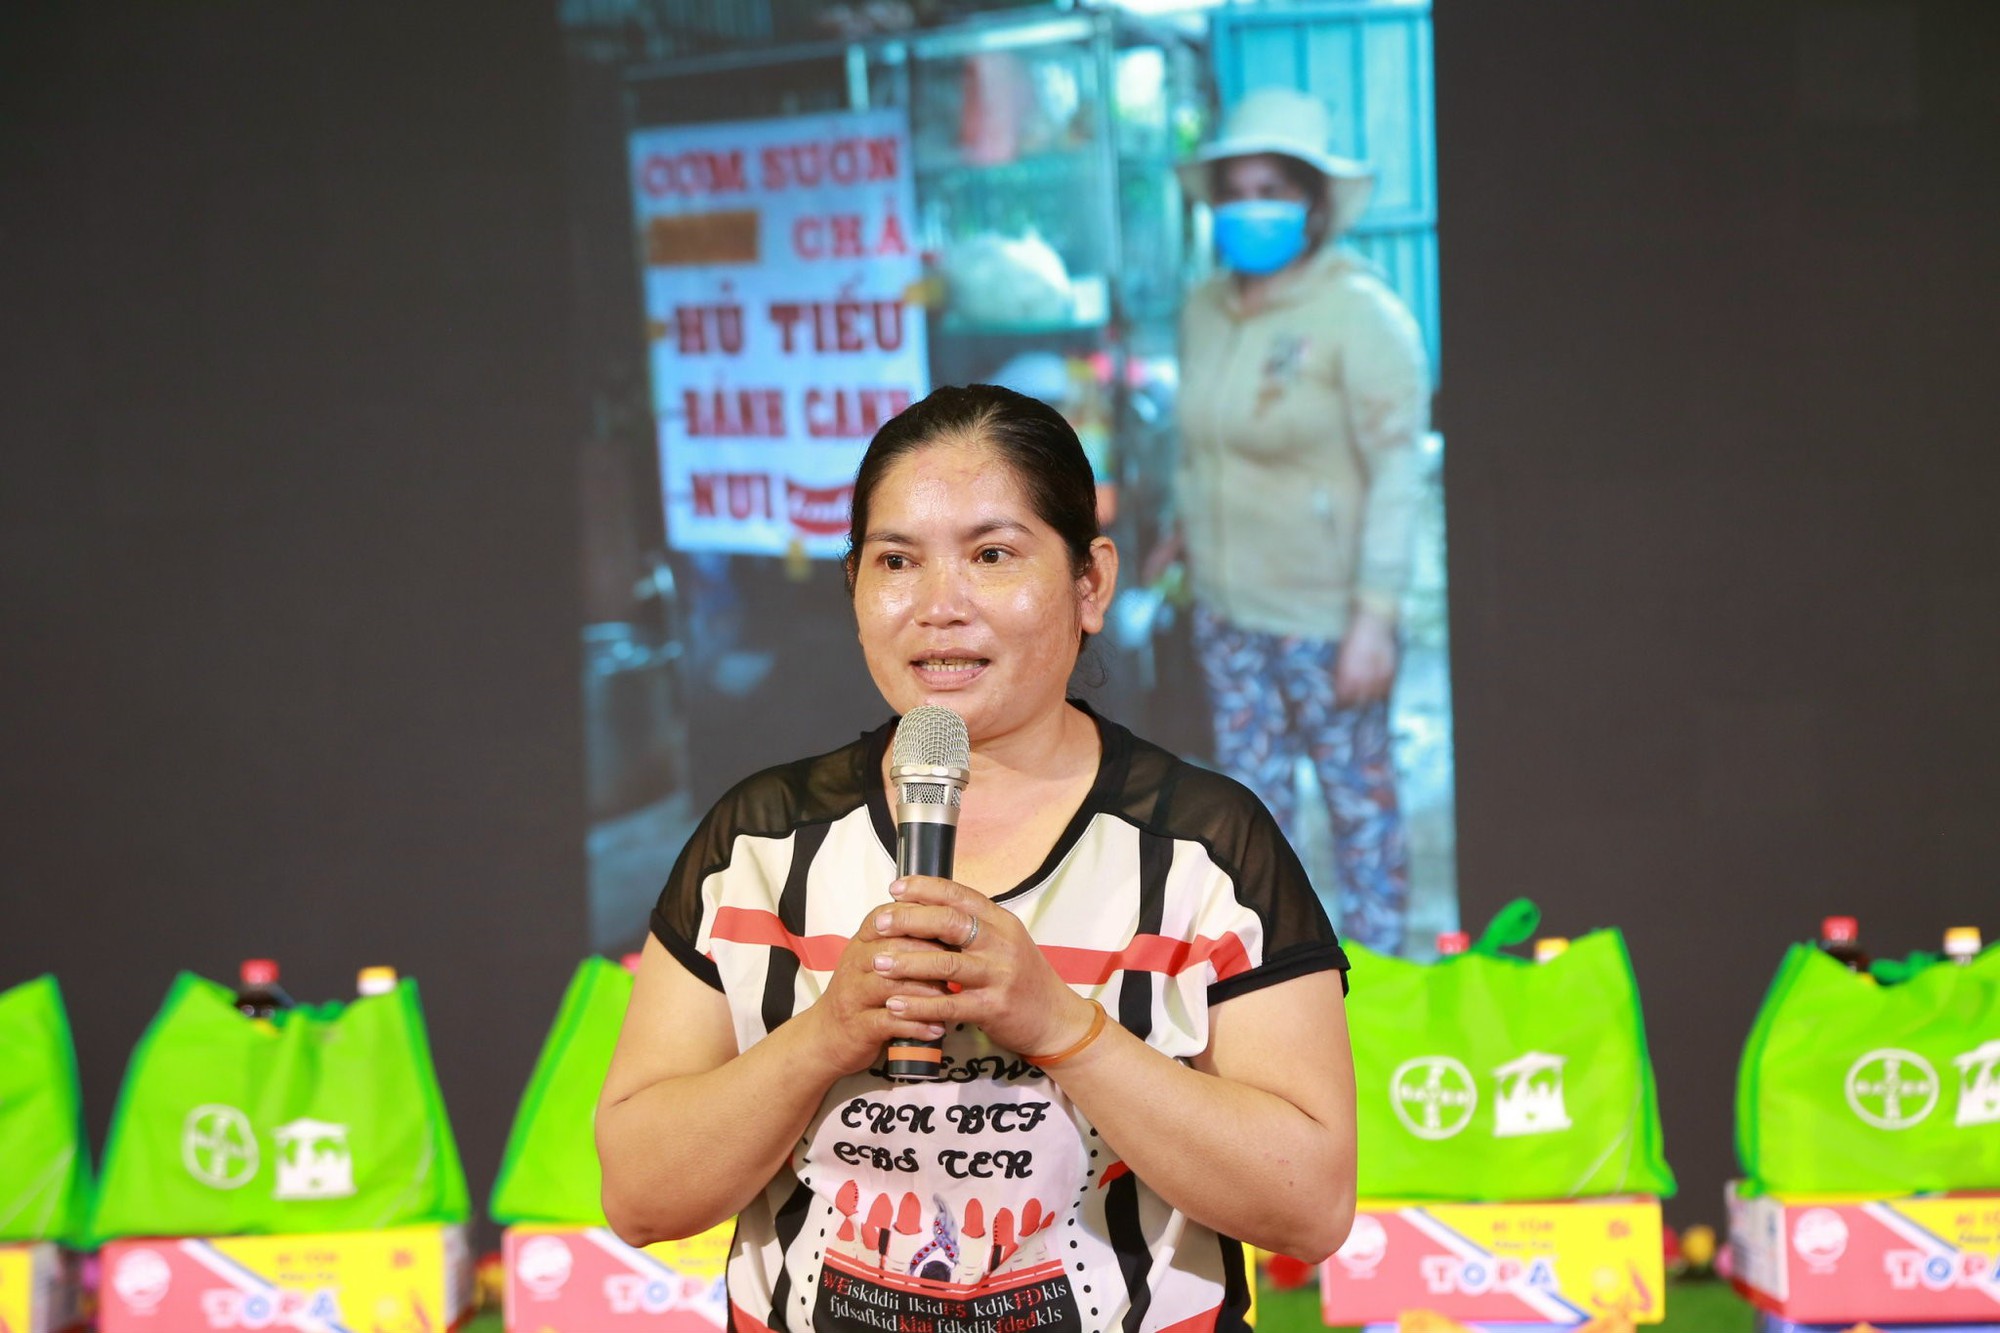 Bayer tiếp tục thực hiện giai đoạn hai dự án “Chung tay hỗ trợ Cộng đồng khó khăn tại Việt Nam” - Ảnh 1.